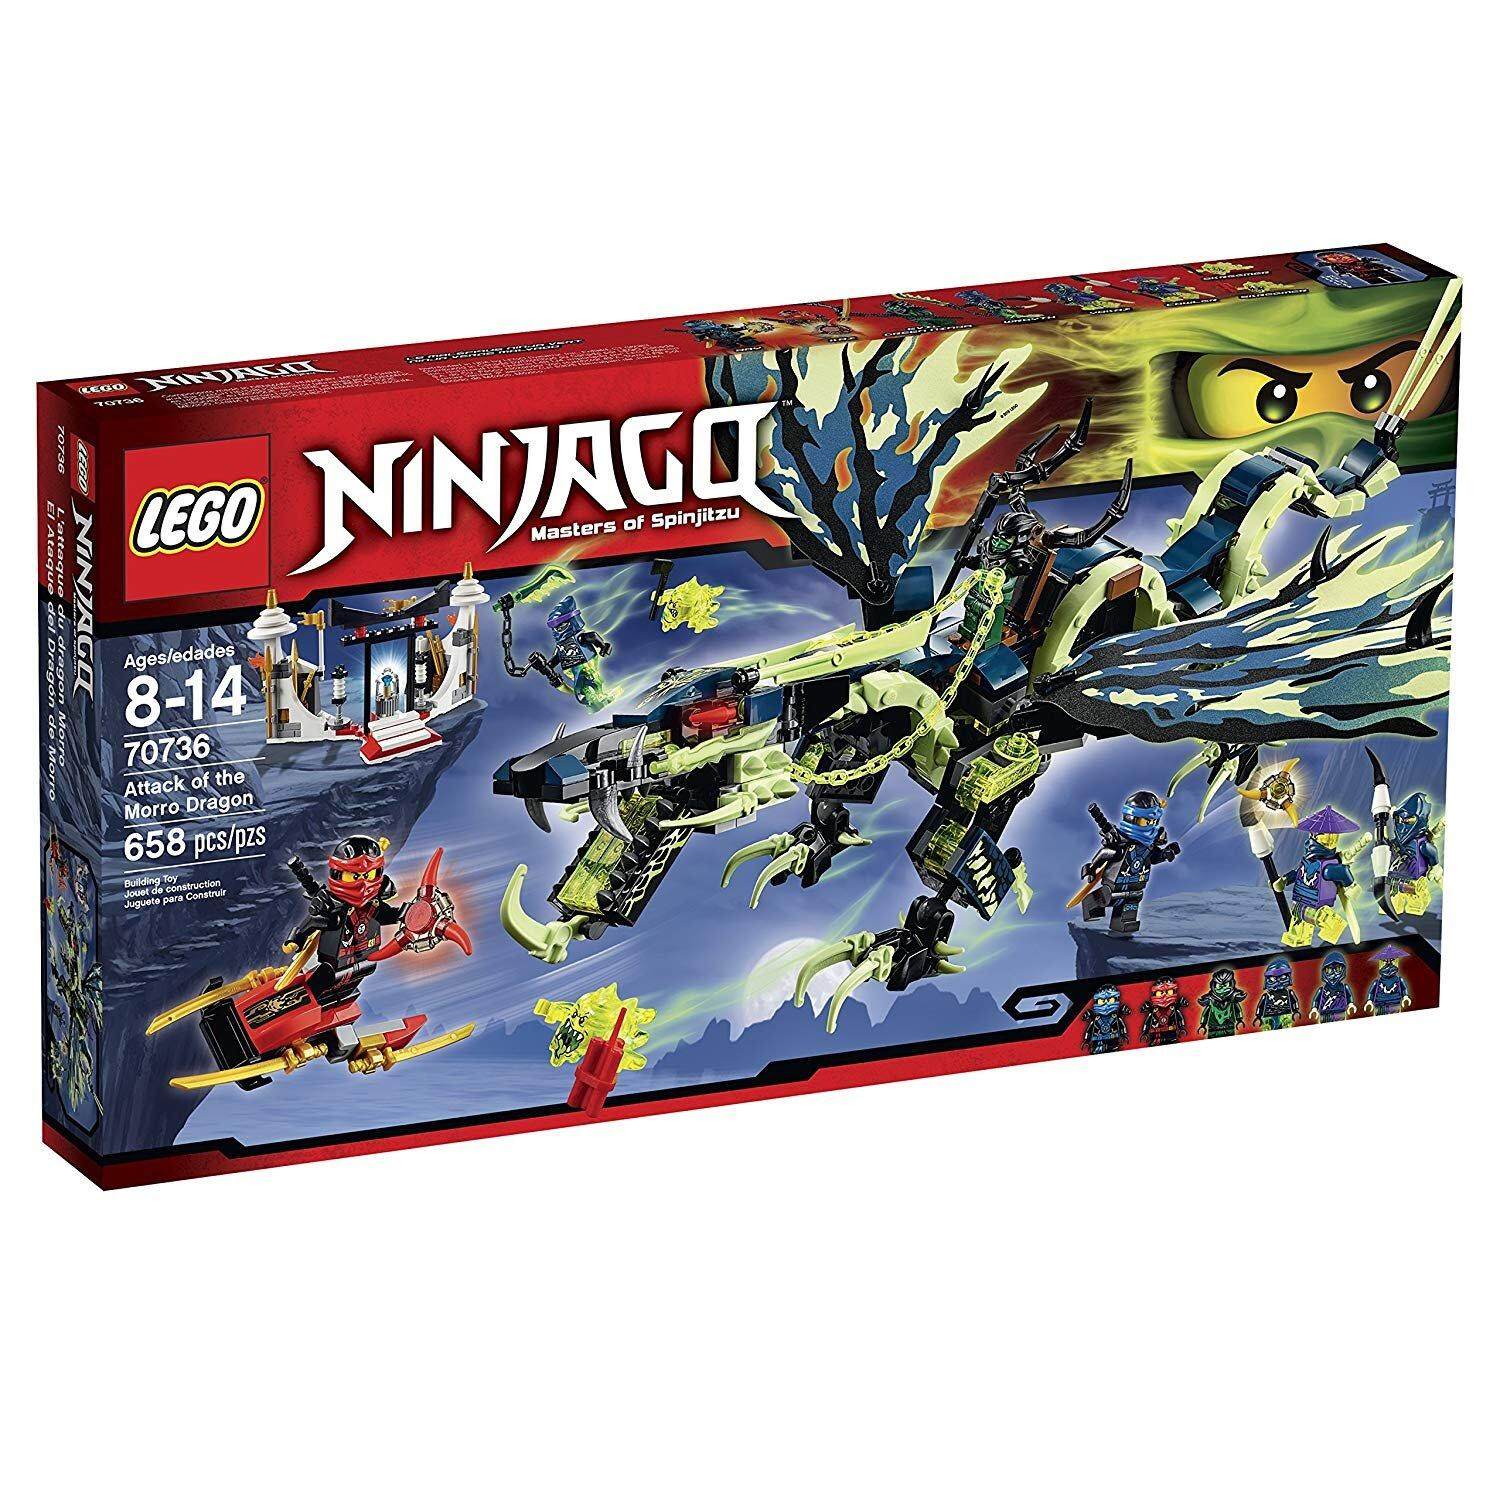 [100% chính hãng]  LEGO 70736 Ninjago Attack of The Morro Dragon  658pcs 8+ lego lắp ráp khổng lồ